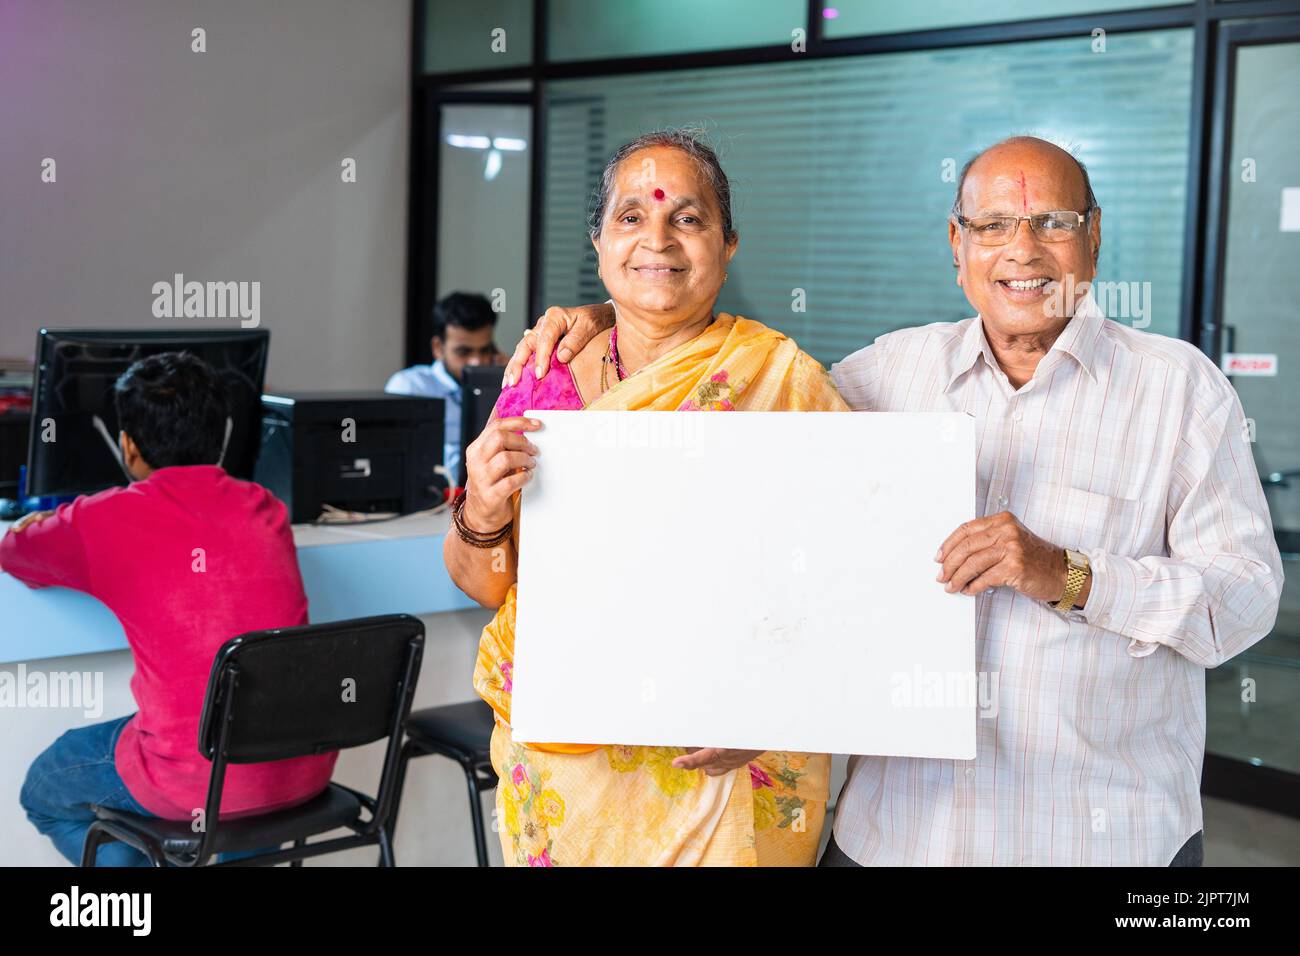 Glückliches lächelndes Senior-Paar, das weiße leere Tafel oder Plakat zeigt, indem es mit der Kamera auf die Bank schaut - Konzept der Werbung, Finanzen oder Versicherung Stockfoto